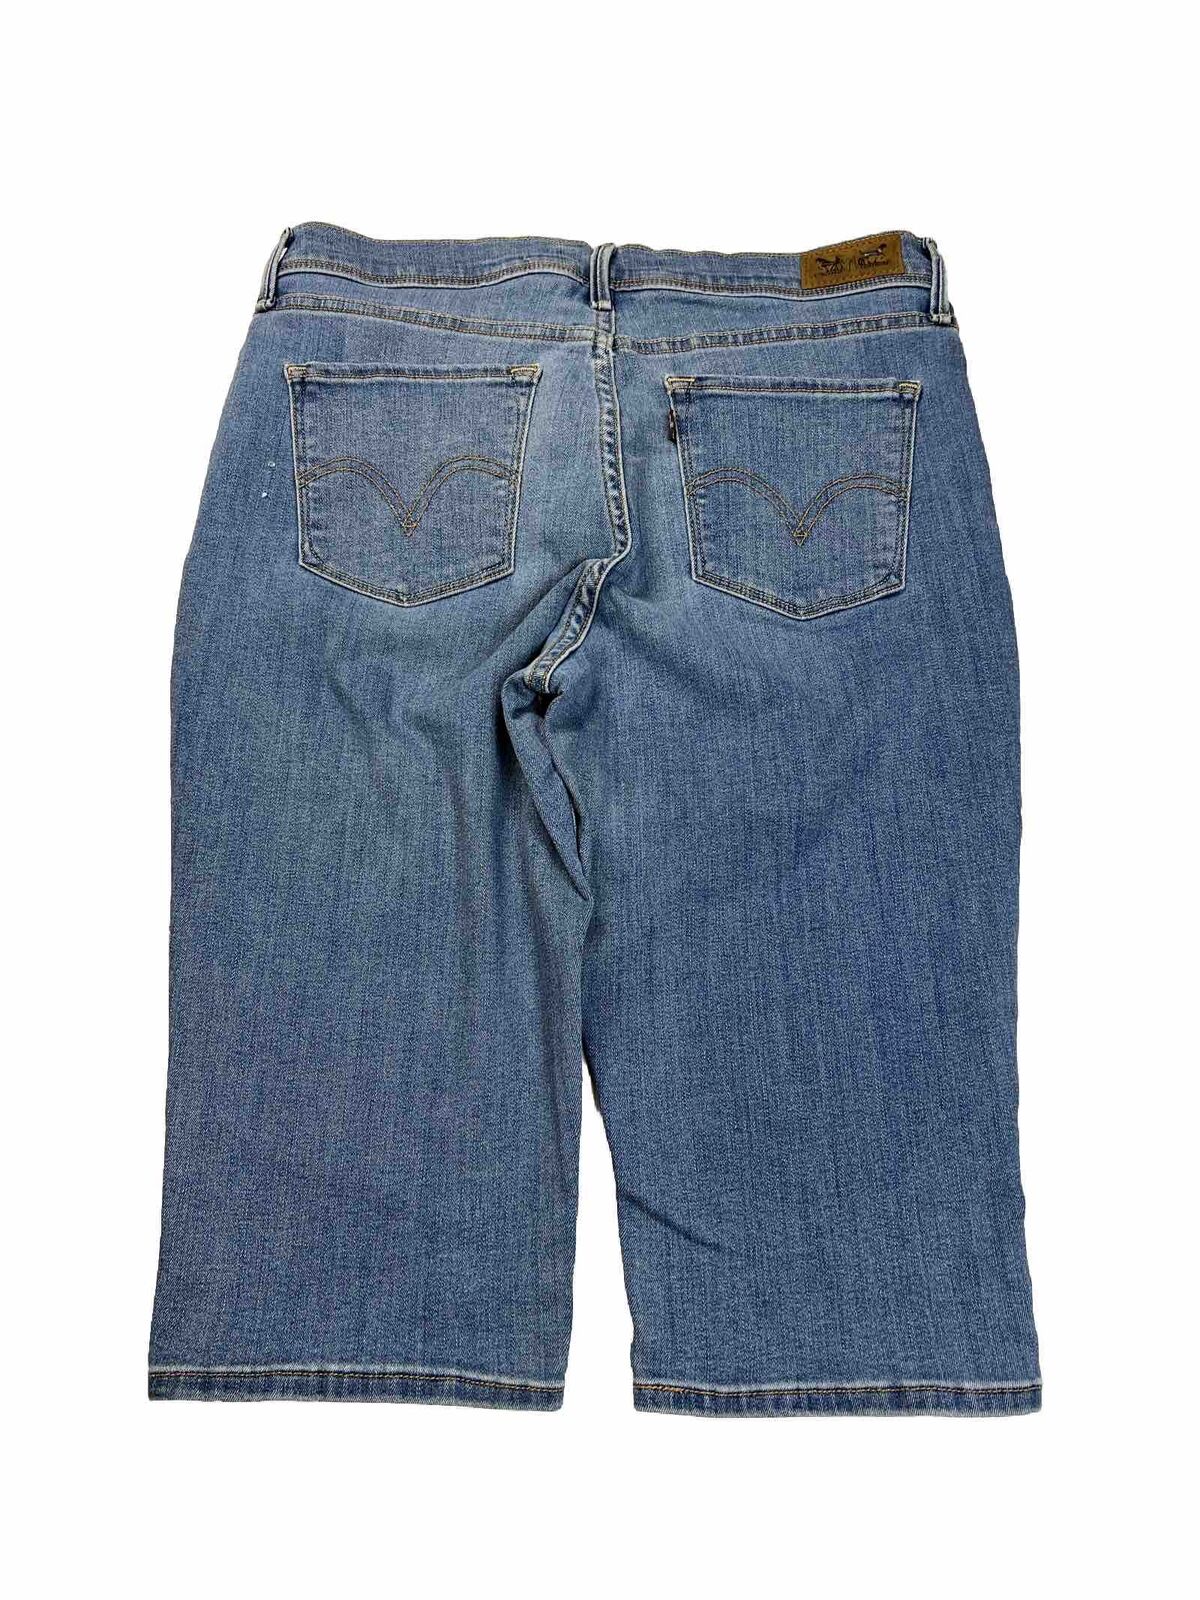 Levi's Women's Light Wash 512 Slimming Crop Jeans - Petite 12P